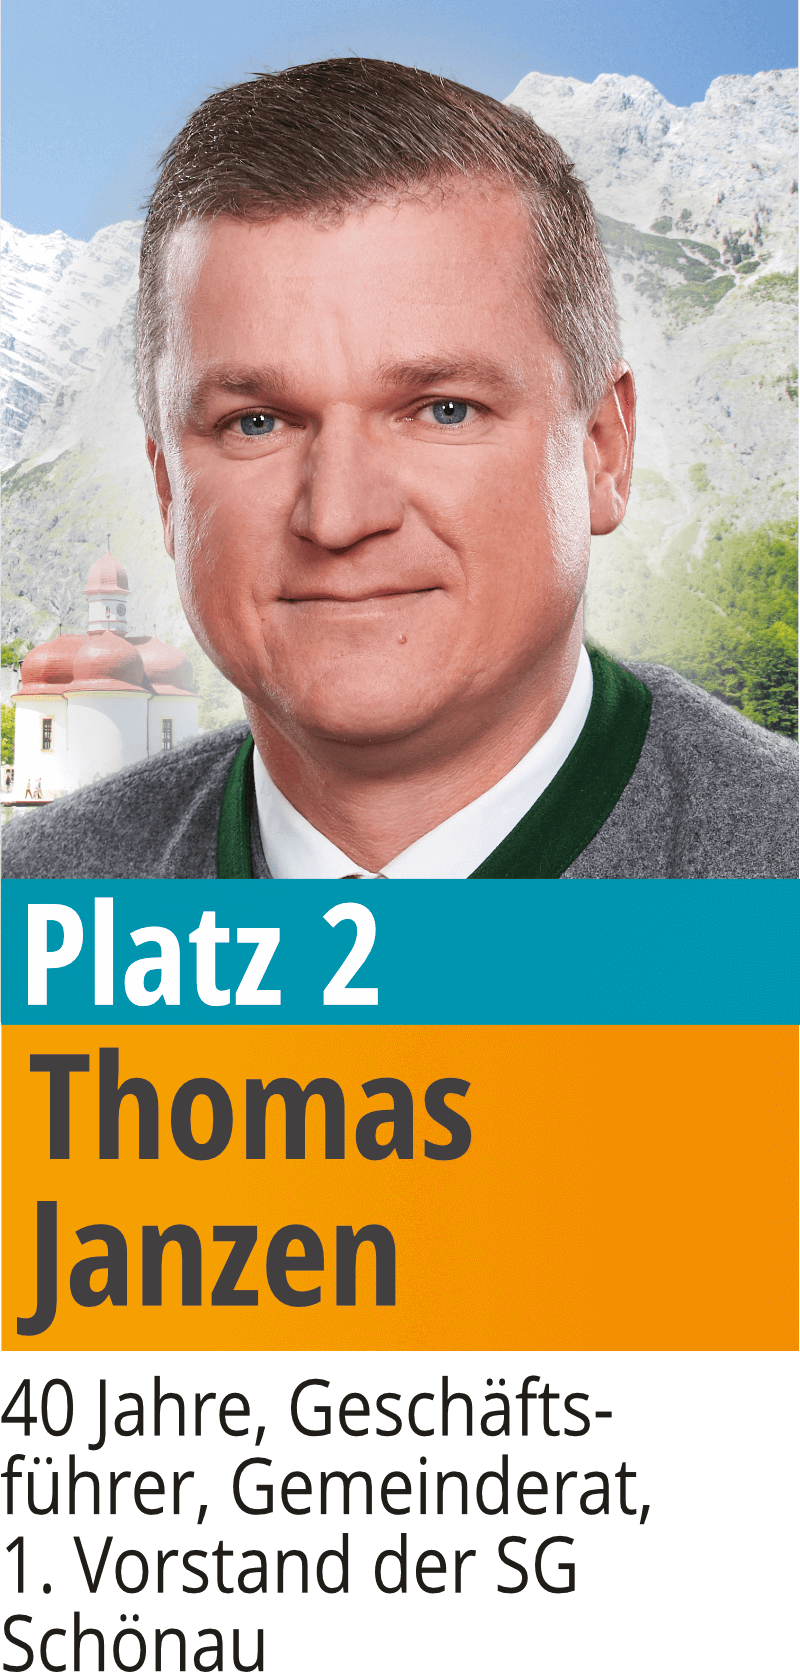 02 Thomas Janzen